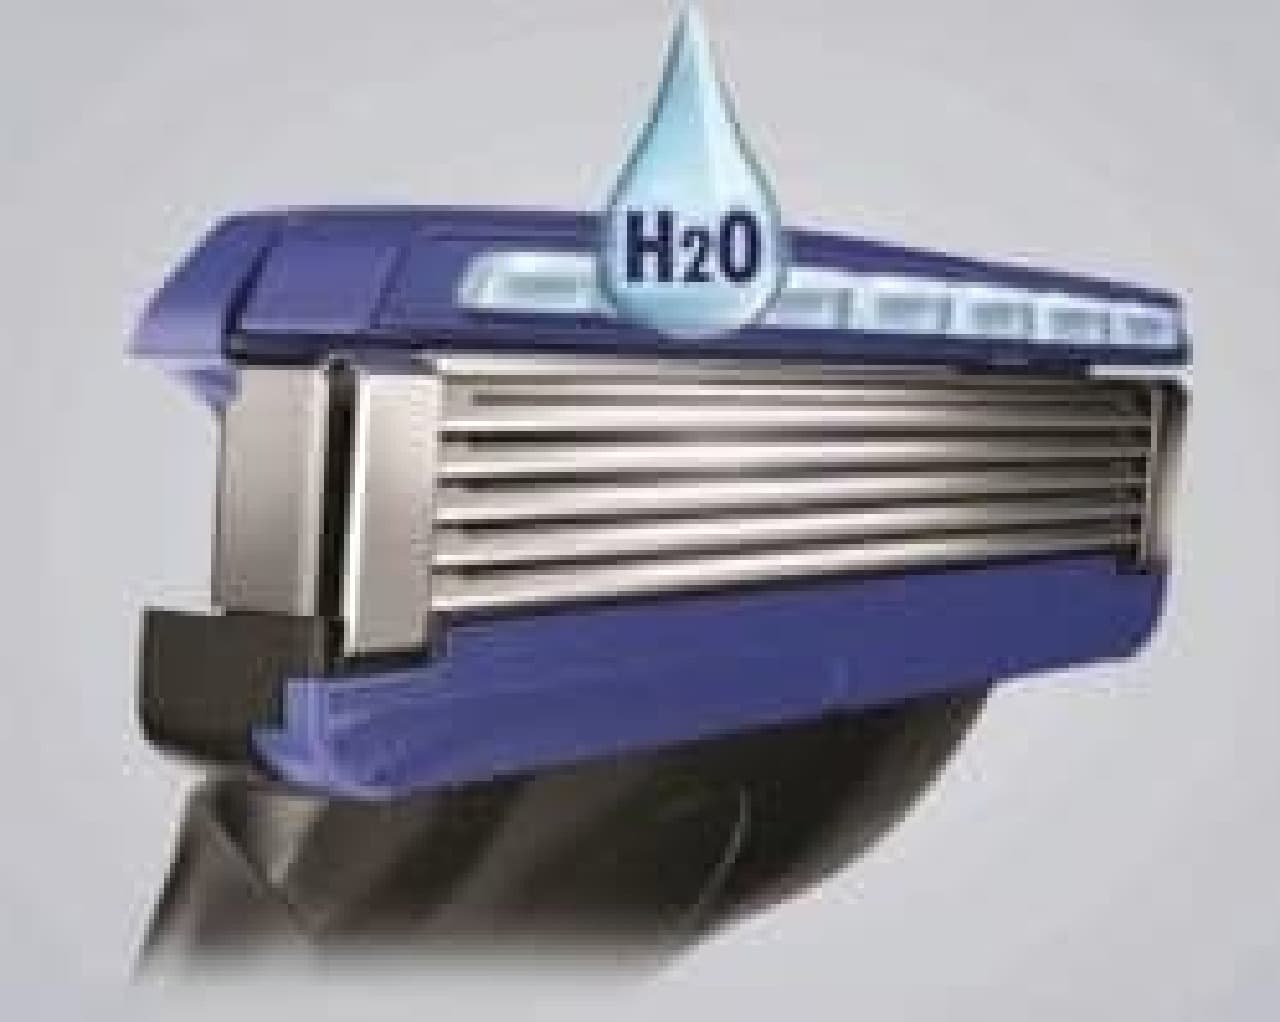 Newly developed "Hydro Glide Gel"